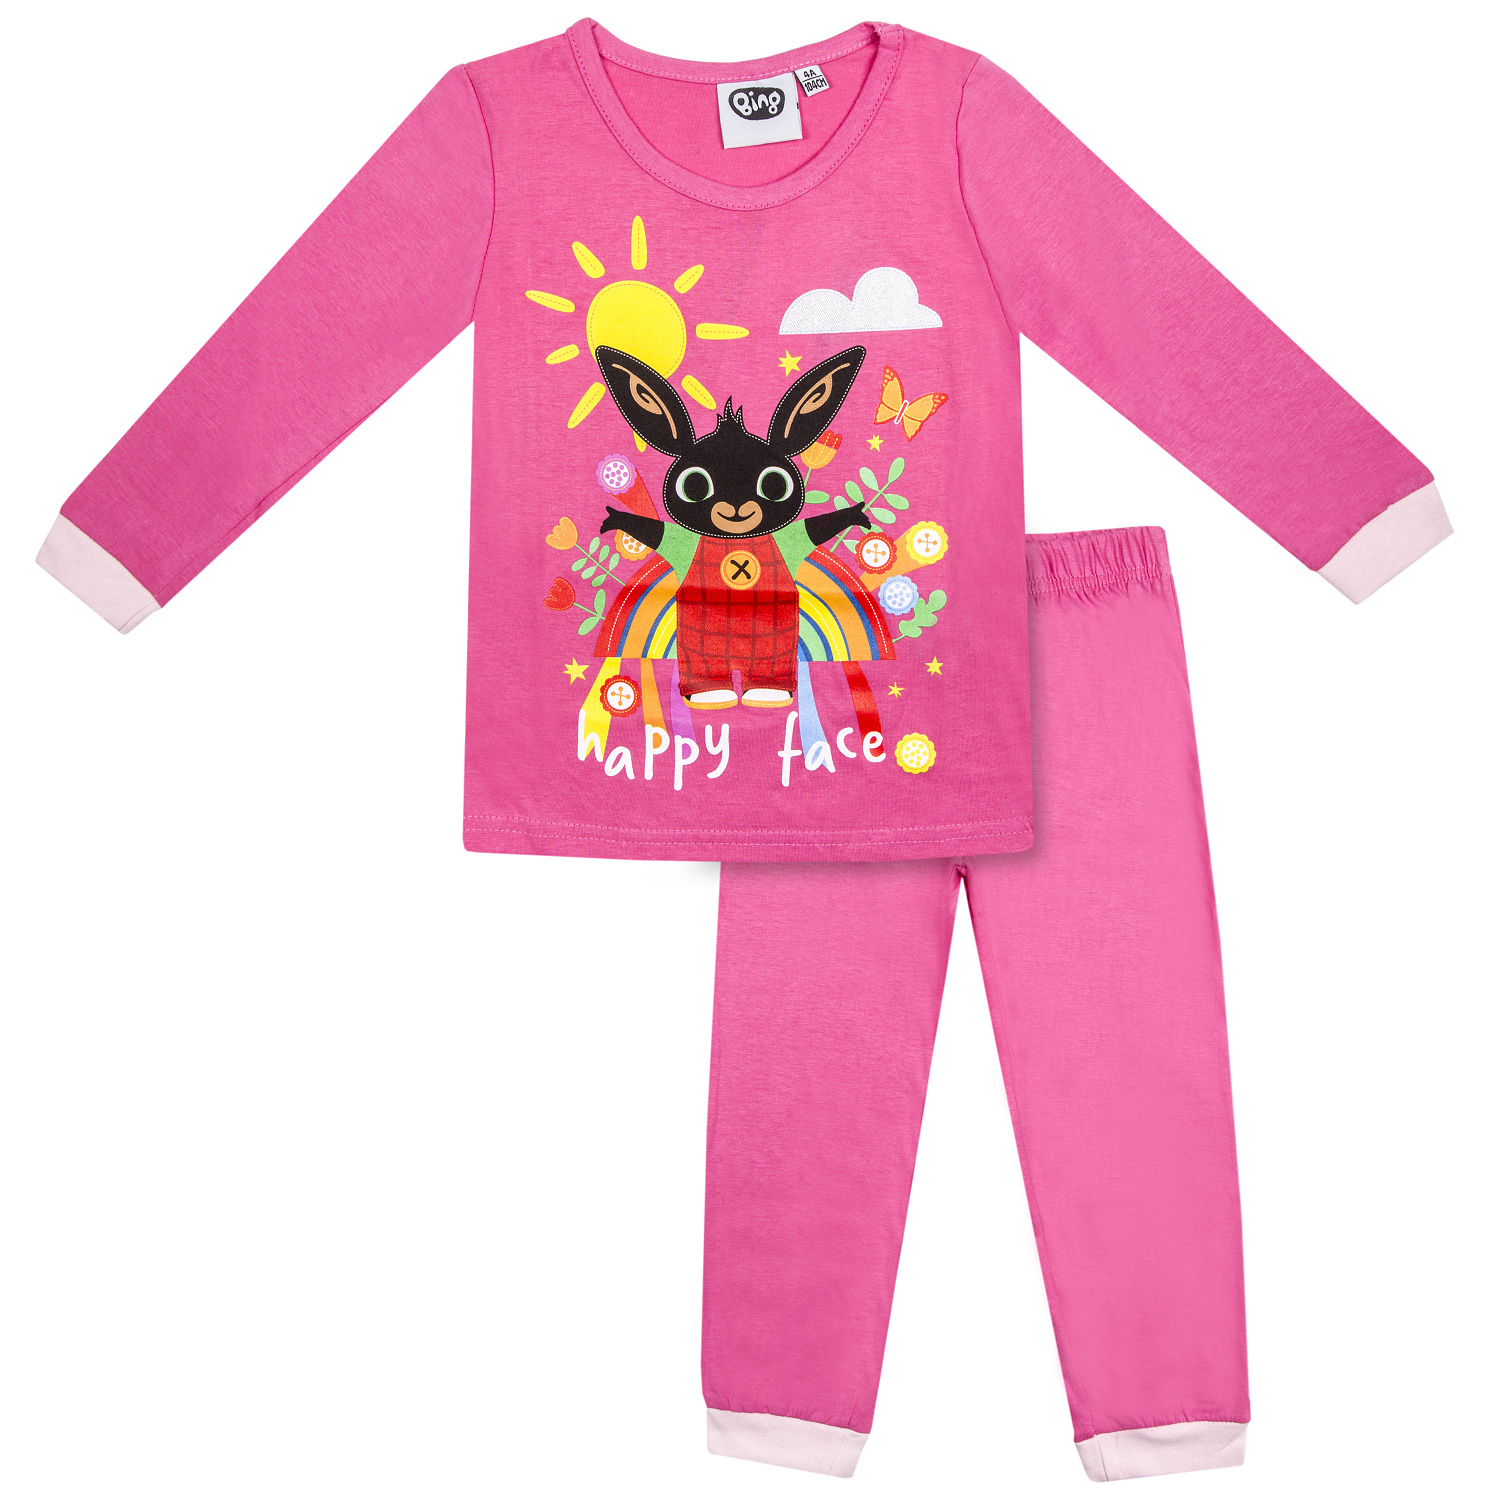 Králíček bing- licence Dívčí pyžamo - Králíček Bing 833-703, tmavší růžová Barva: Růžová, Velikost: 98